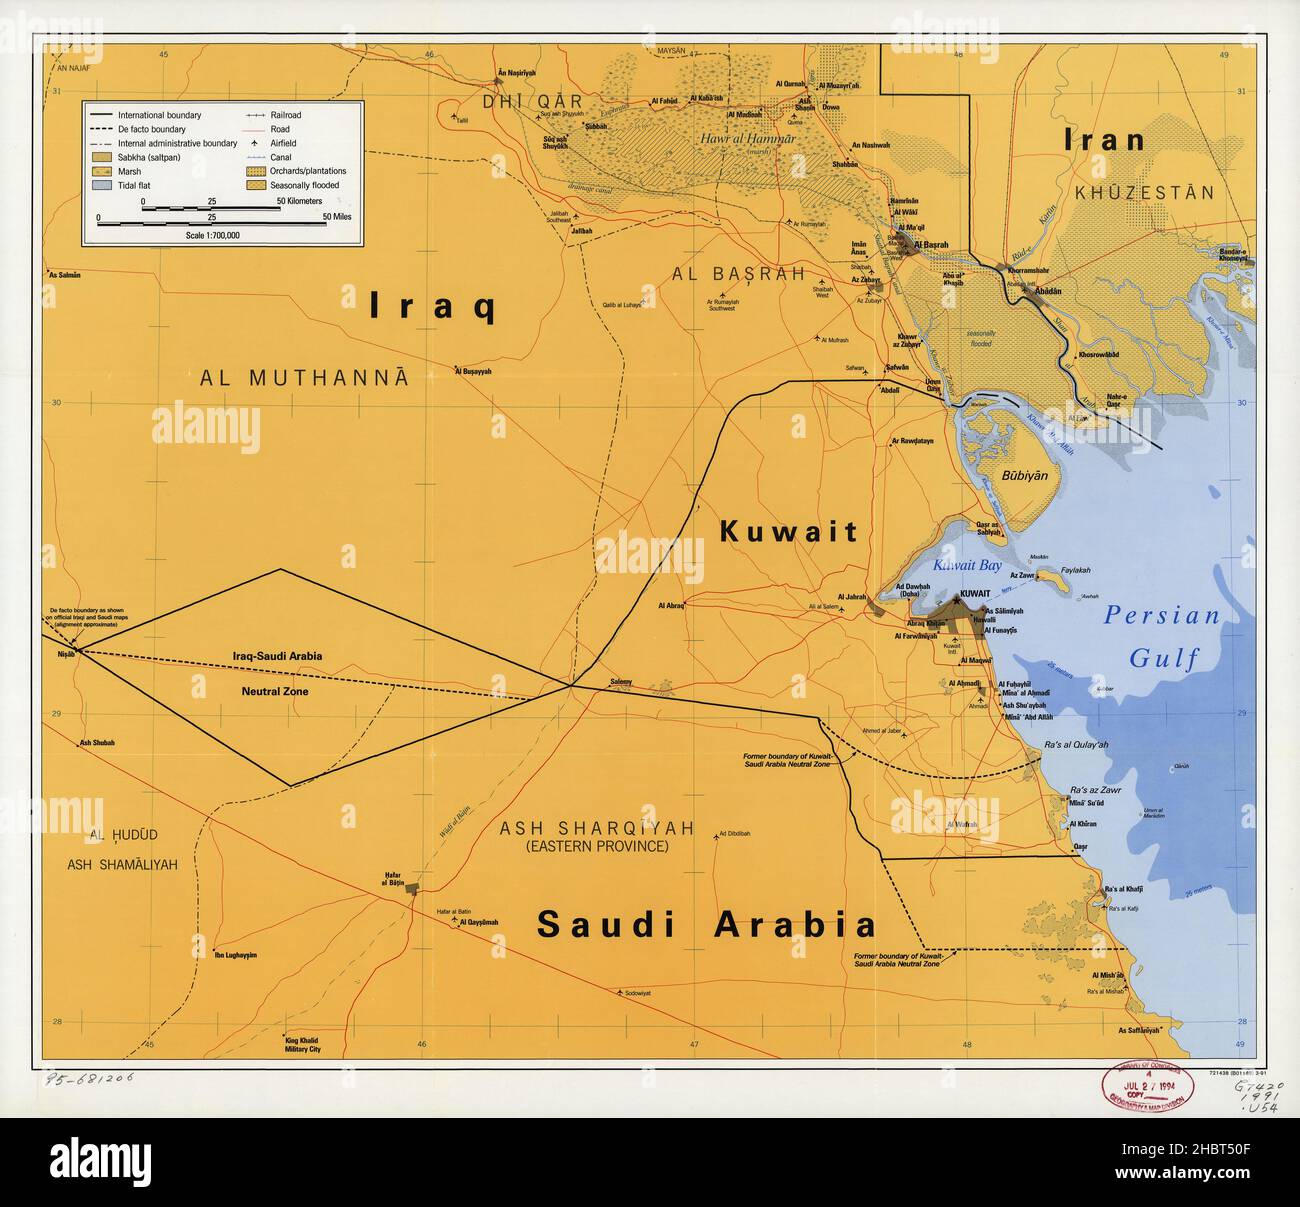 Mappa del Medio Oriente - Mostra i paesi ad ovest del Golfo Persico, il Kuwait e i paesi circostanti, parti di Iraq, Iran e Arabia Saudita. Mostra anche de facto confini ca. 1991 Foto Stock